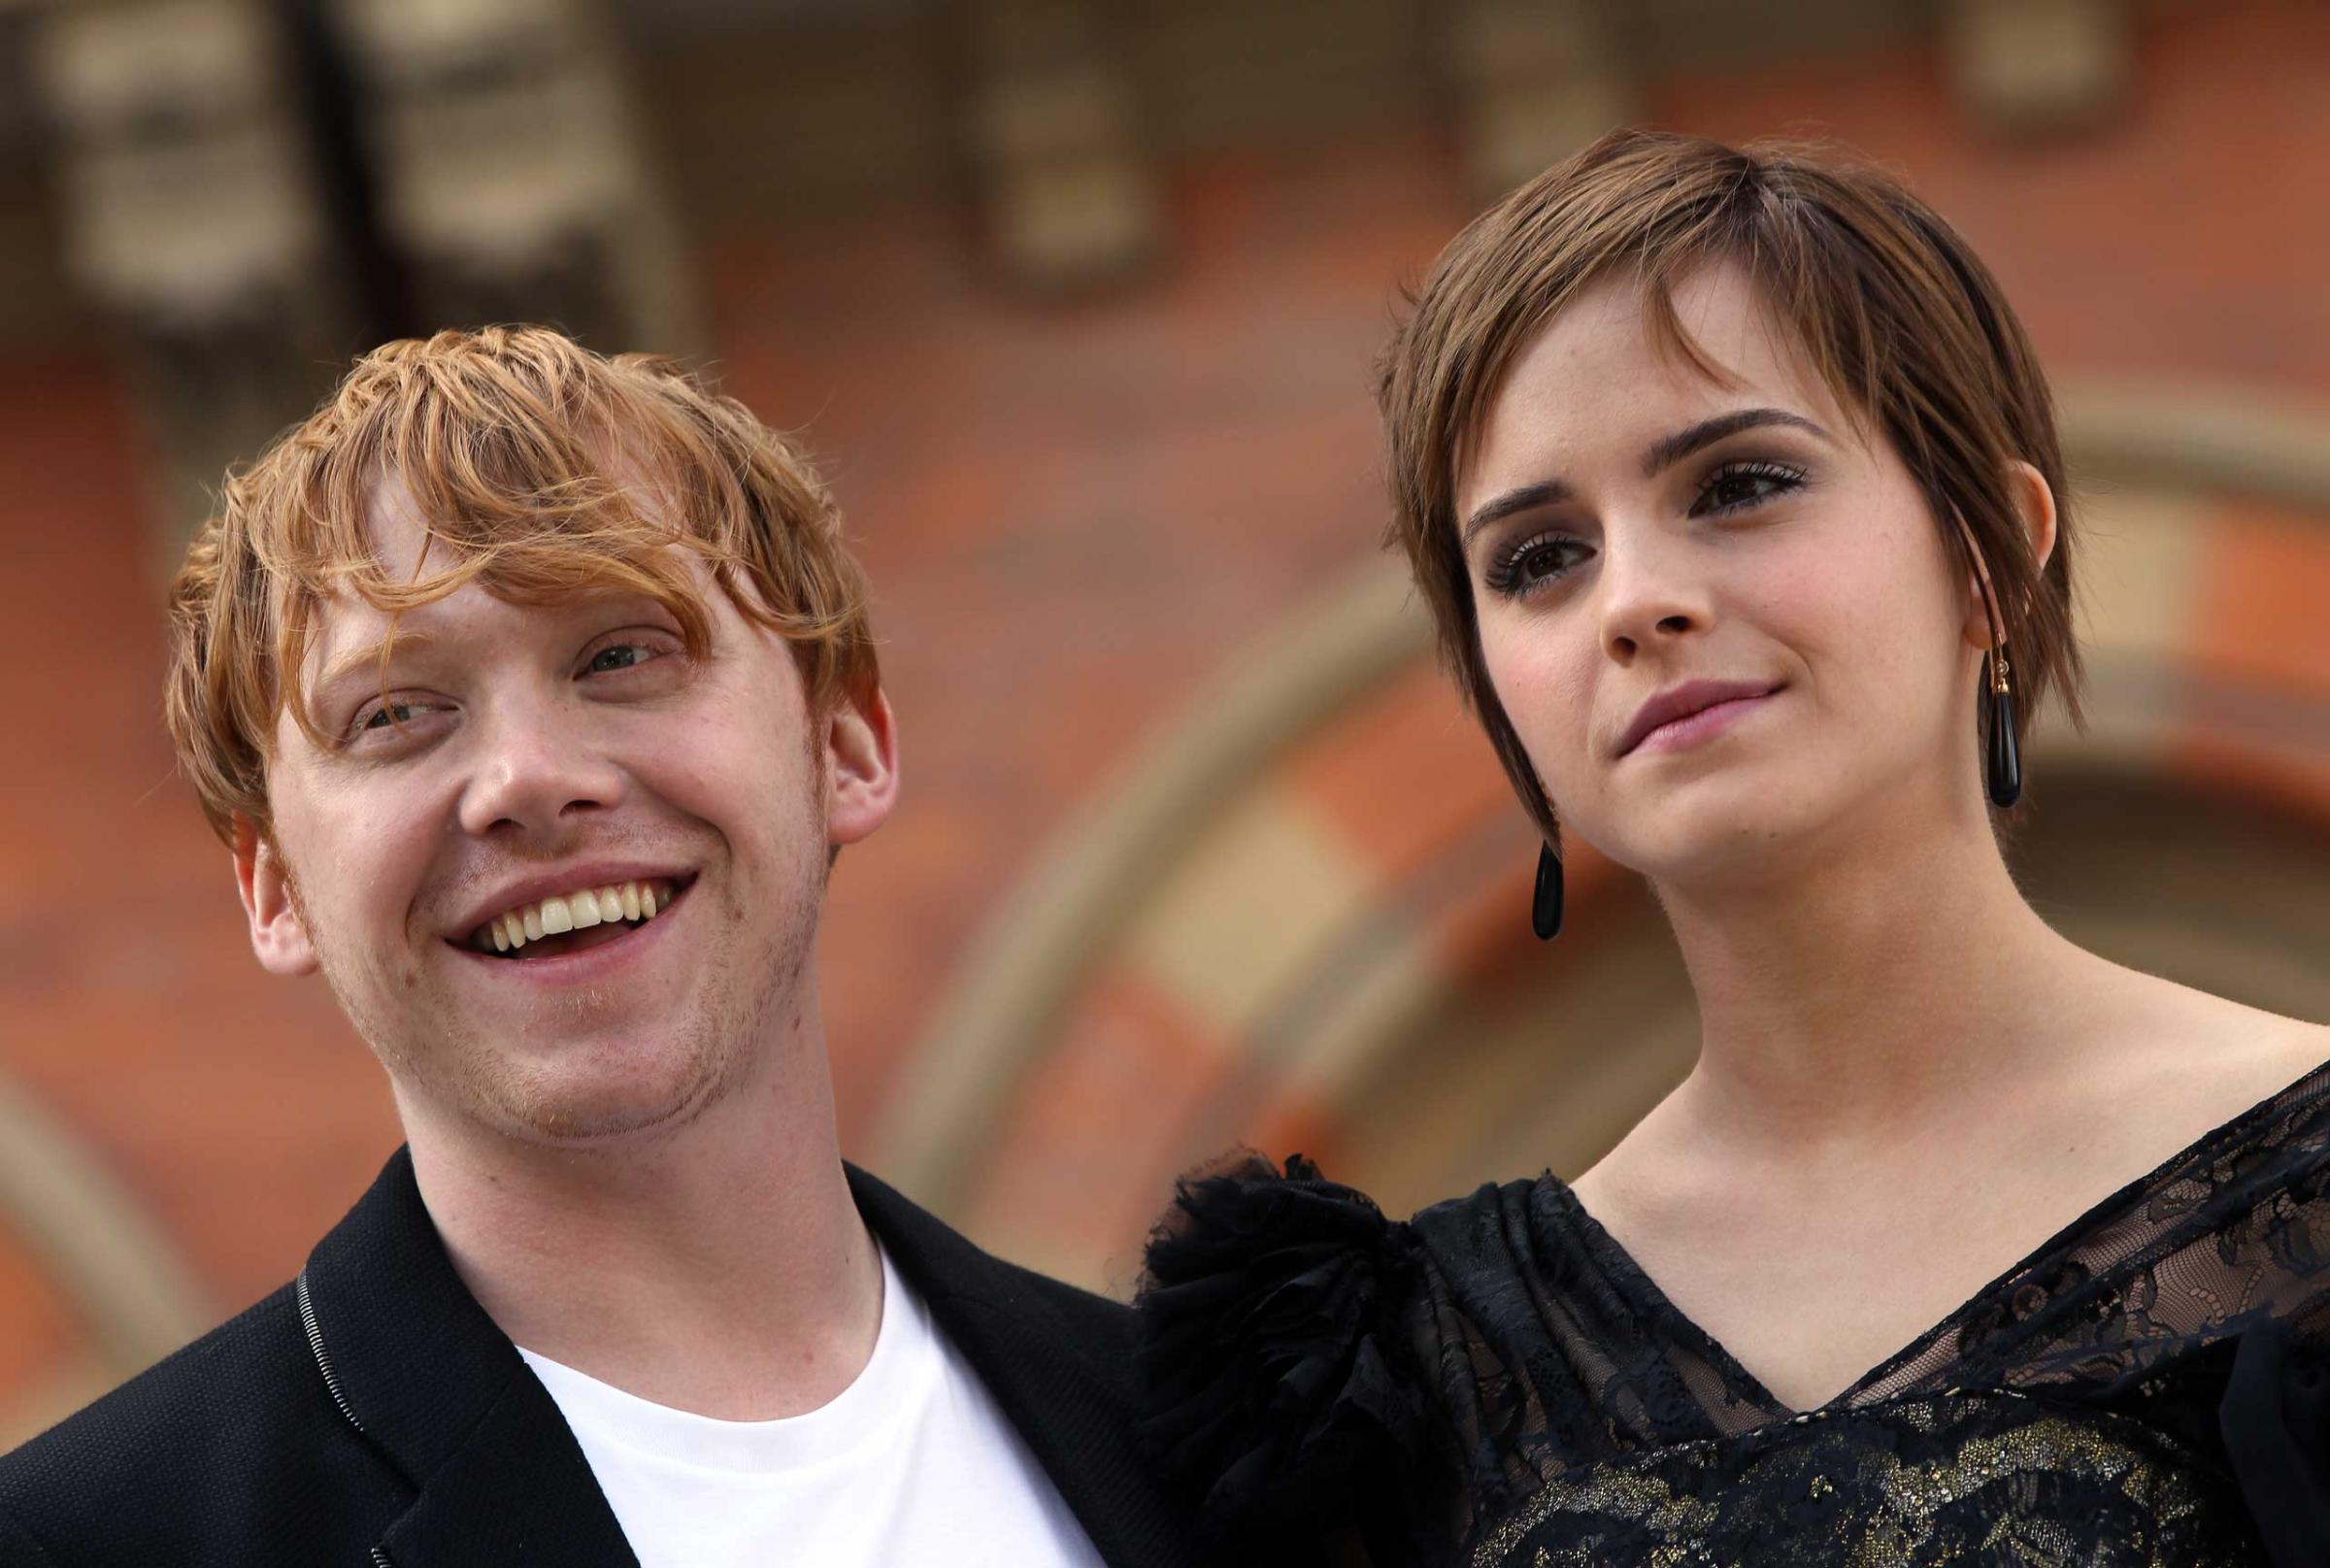 Rupert Grint and Emma Watson